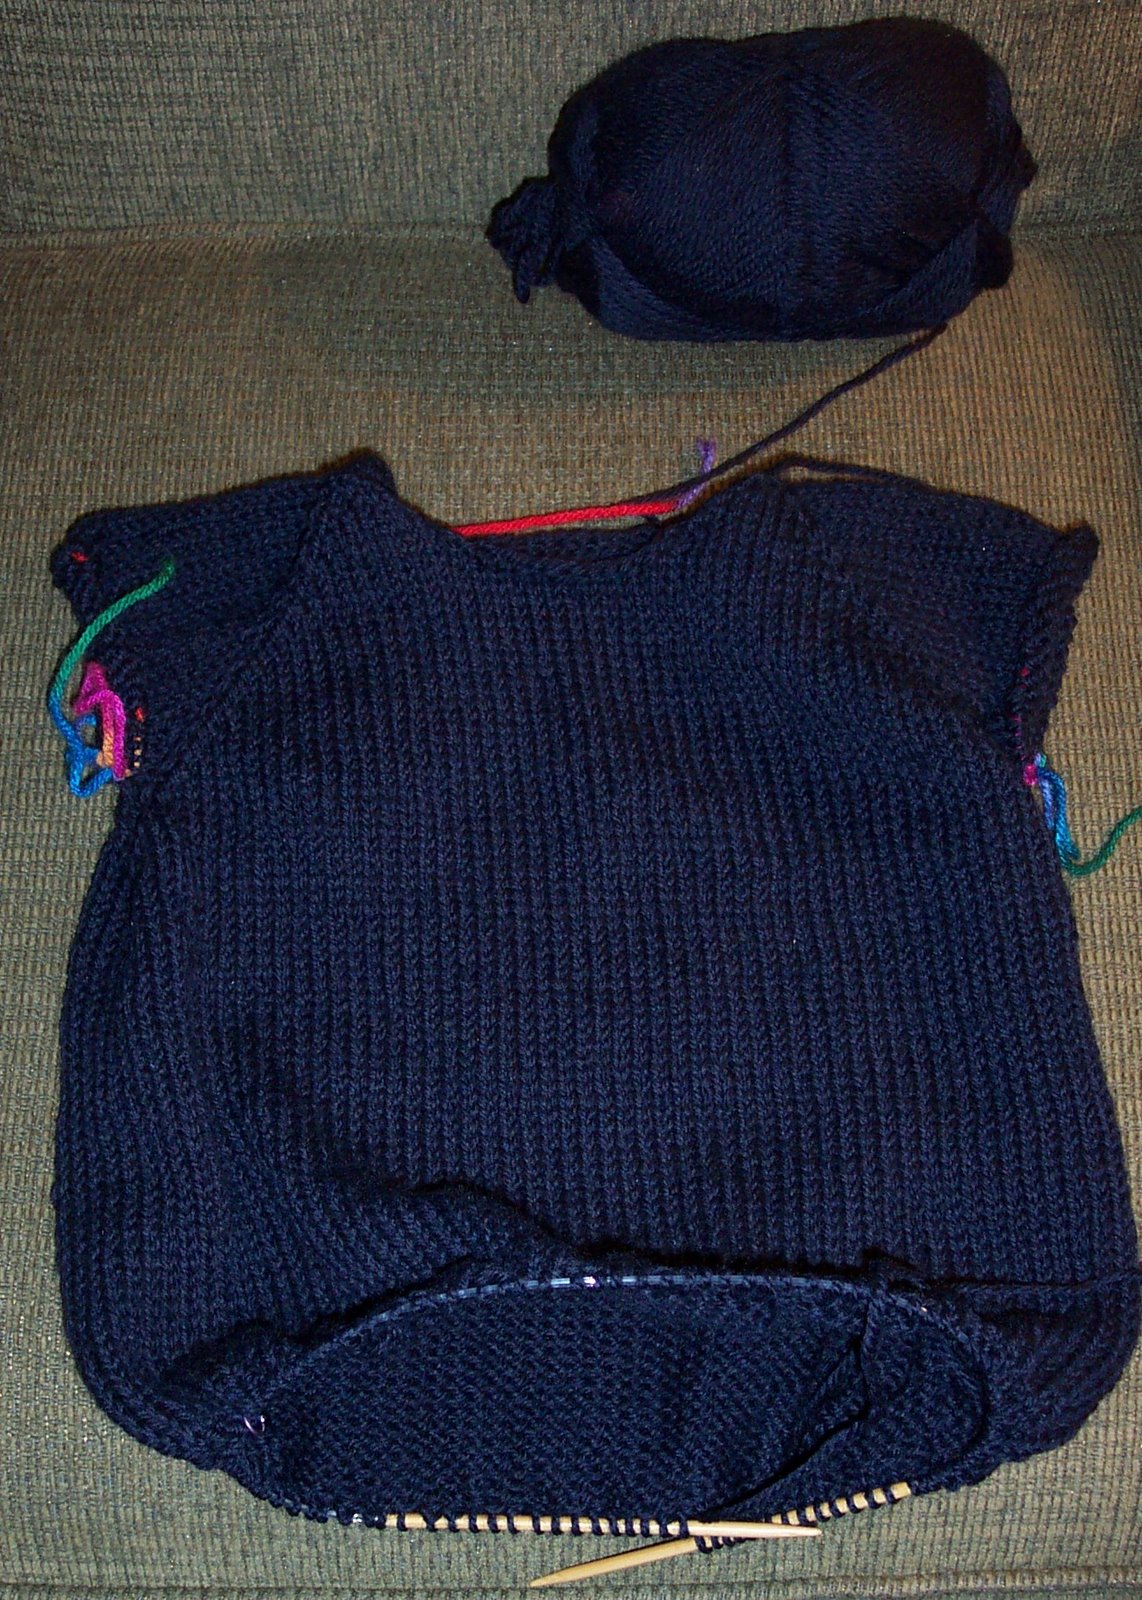 [J's+sweater+2007.jpg]